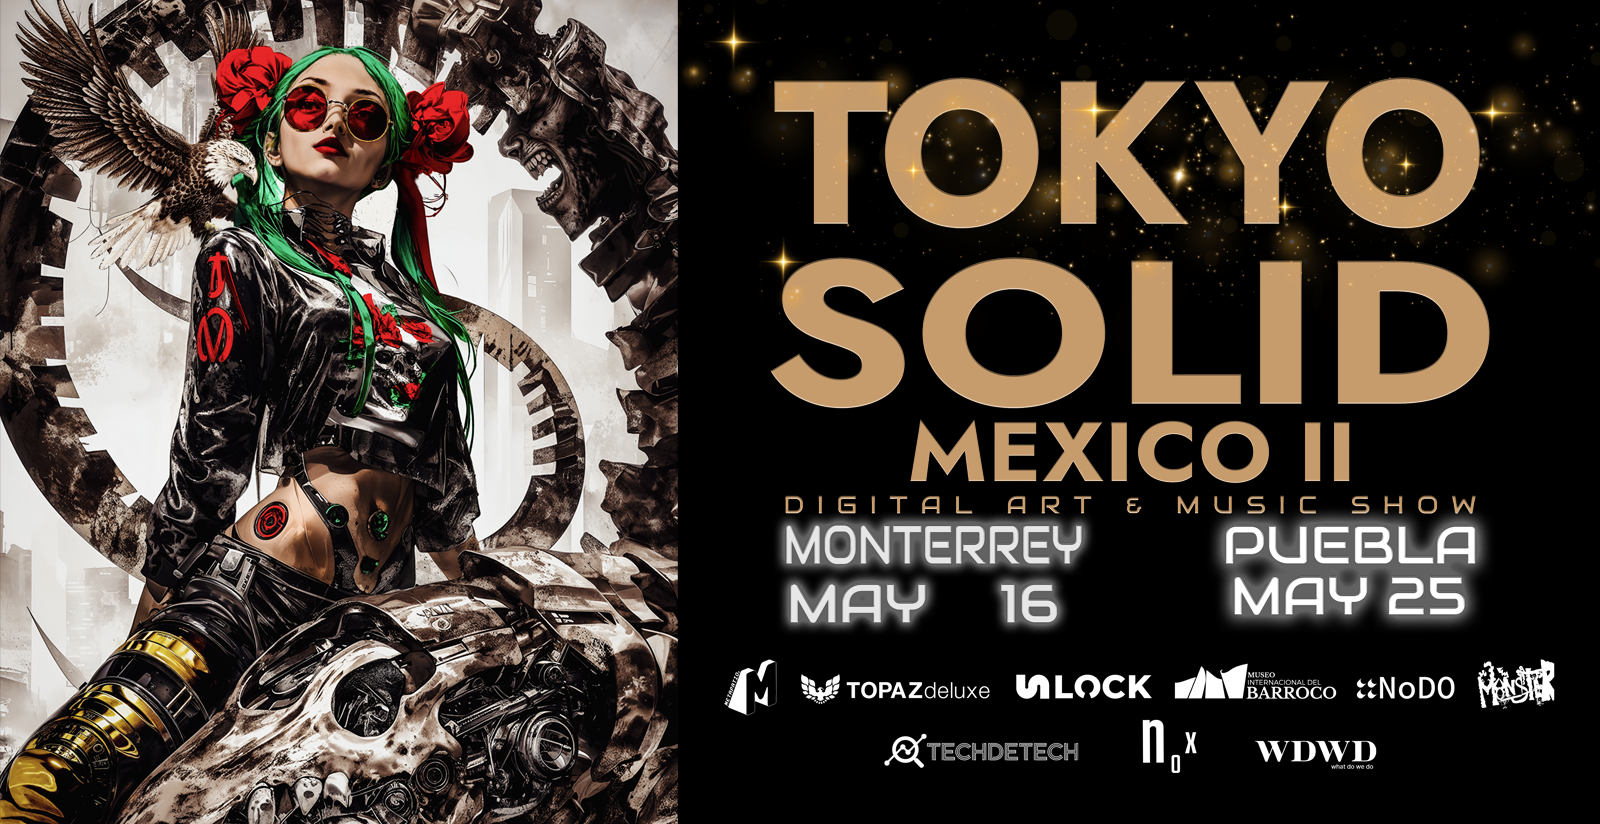 TOKYO SOLID MEXICO Ⅱ